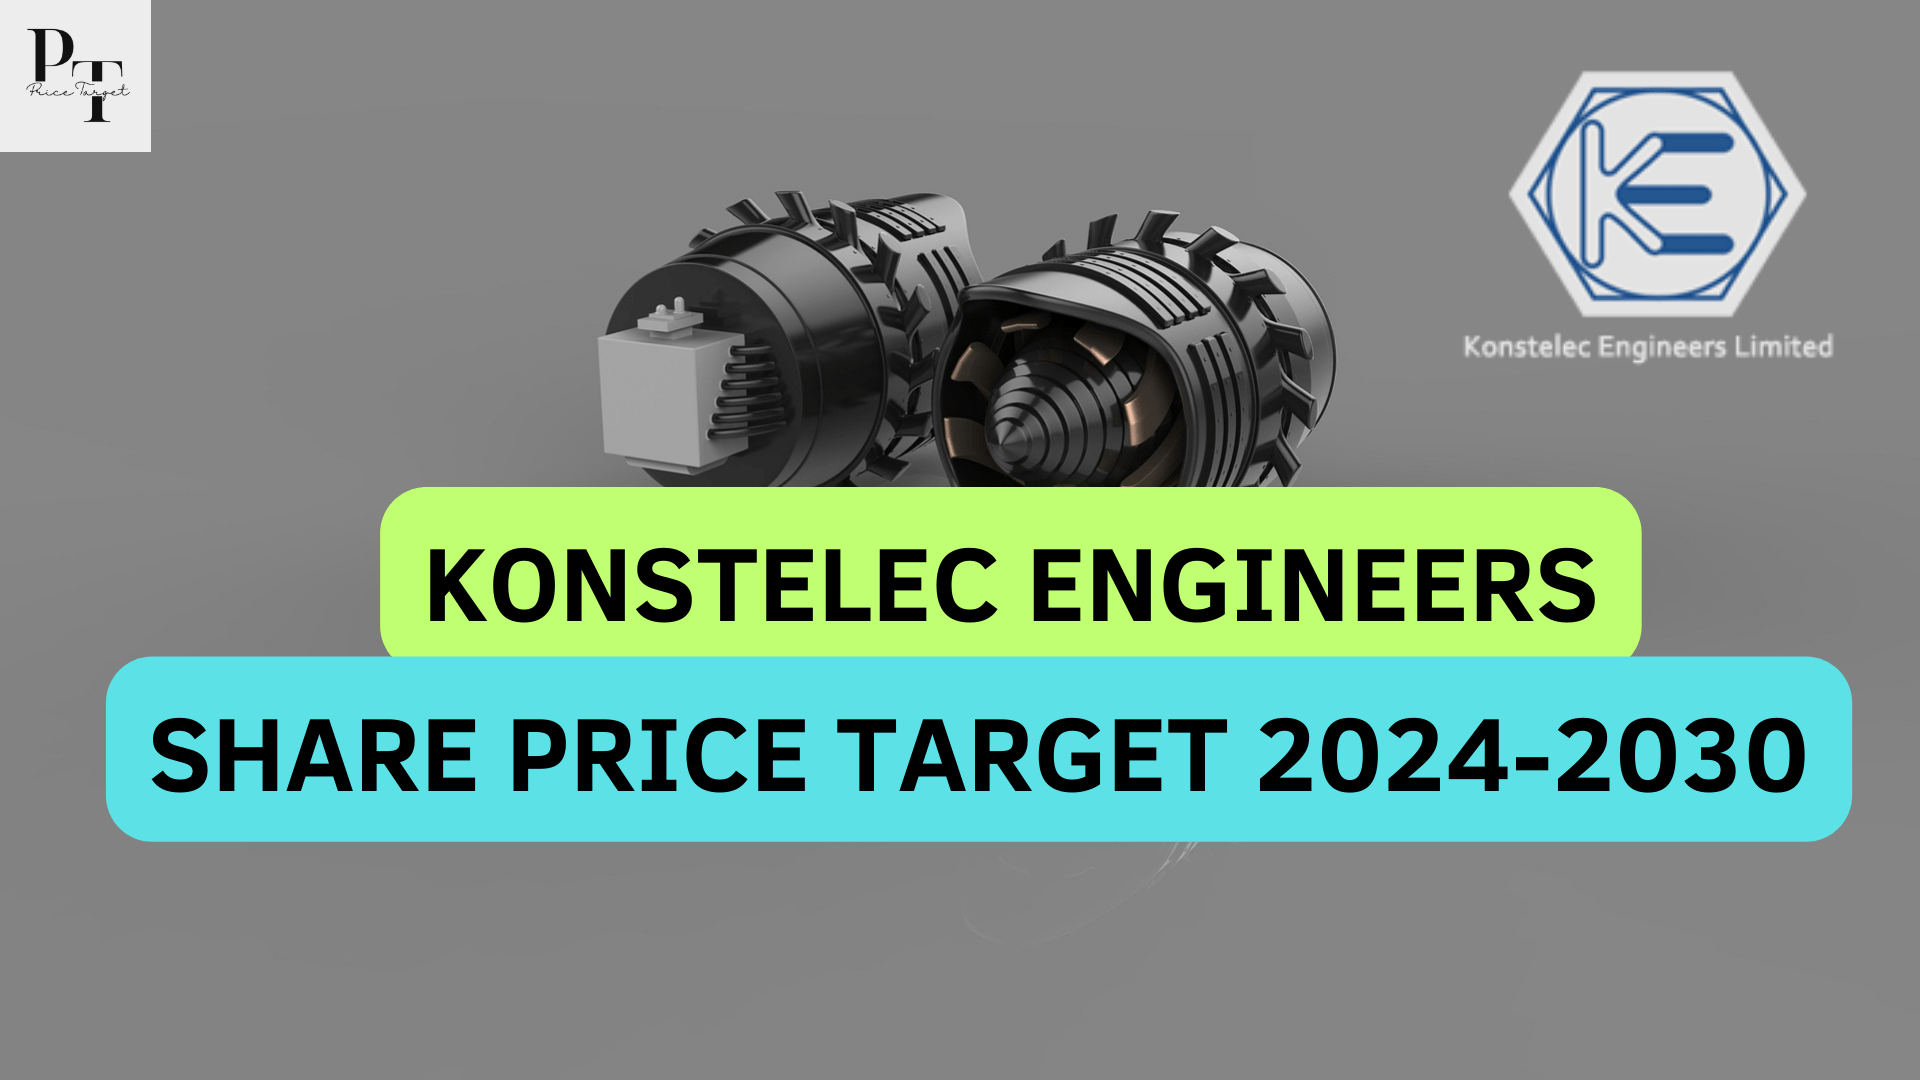 Konstelec Engineers Share Price Targets